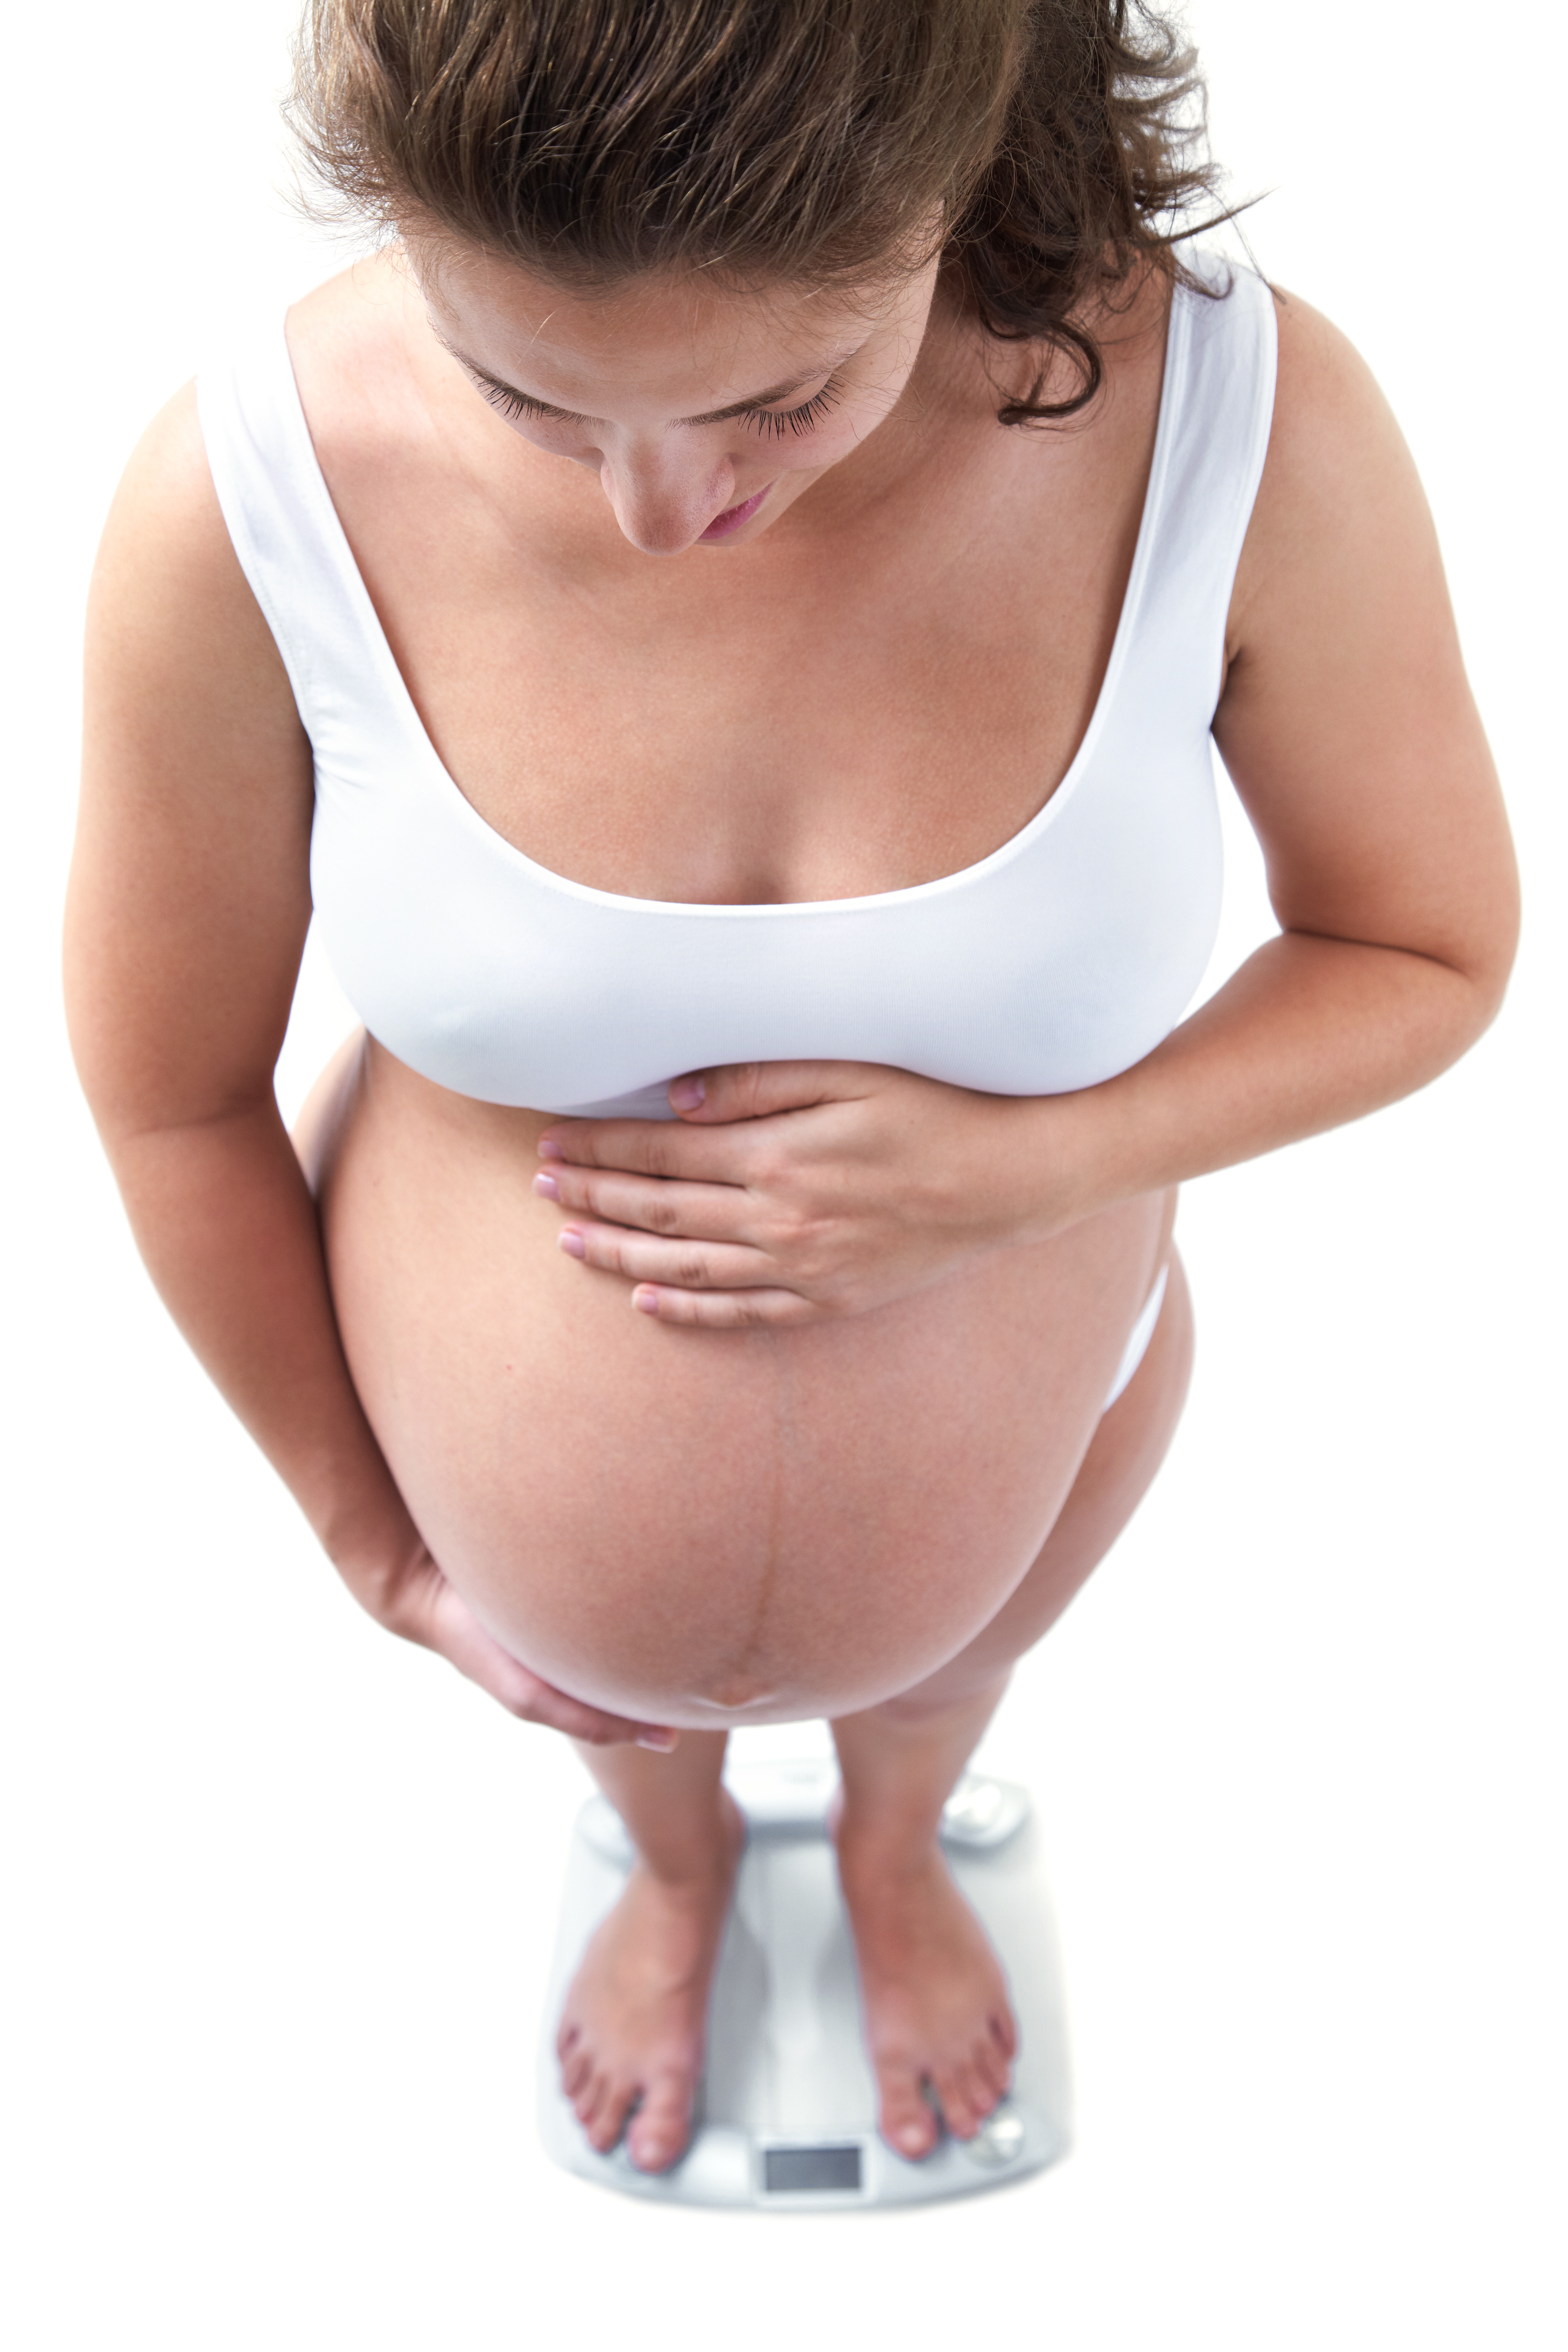 L’obésité joue aussi un rôle clé dans les troubles hypertensifs d'apparition précoce, jusque-là plutôt associés à des problèmes avec le placenta (Visuel AdobeStock_51640333)